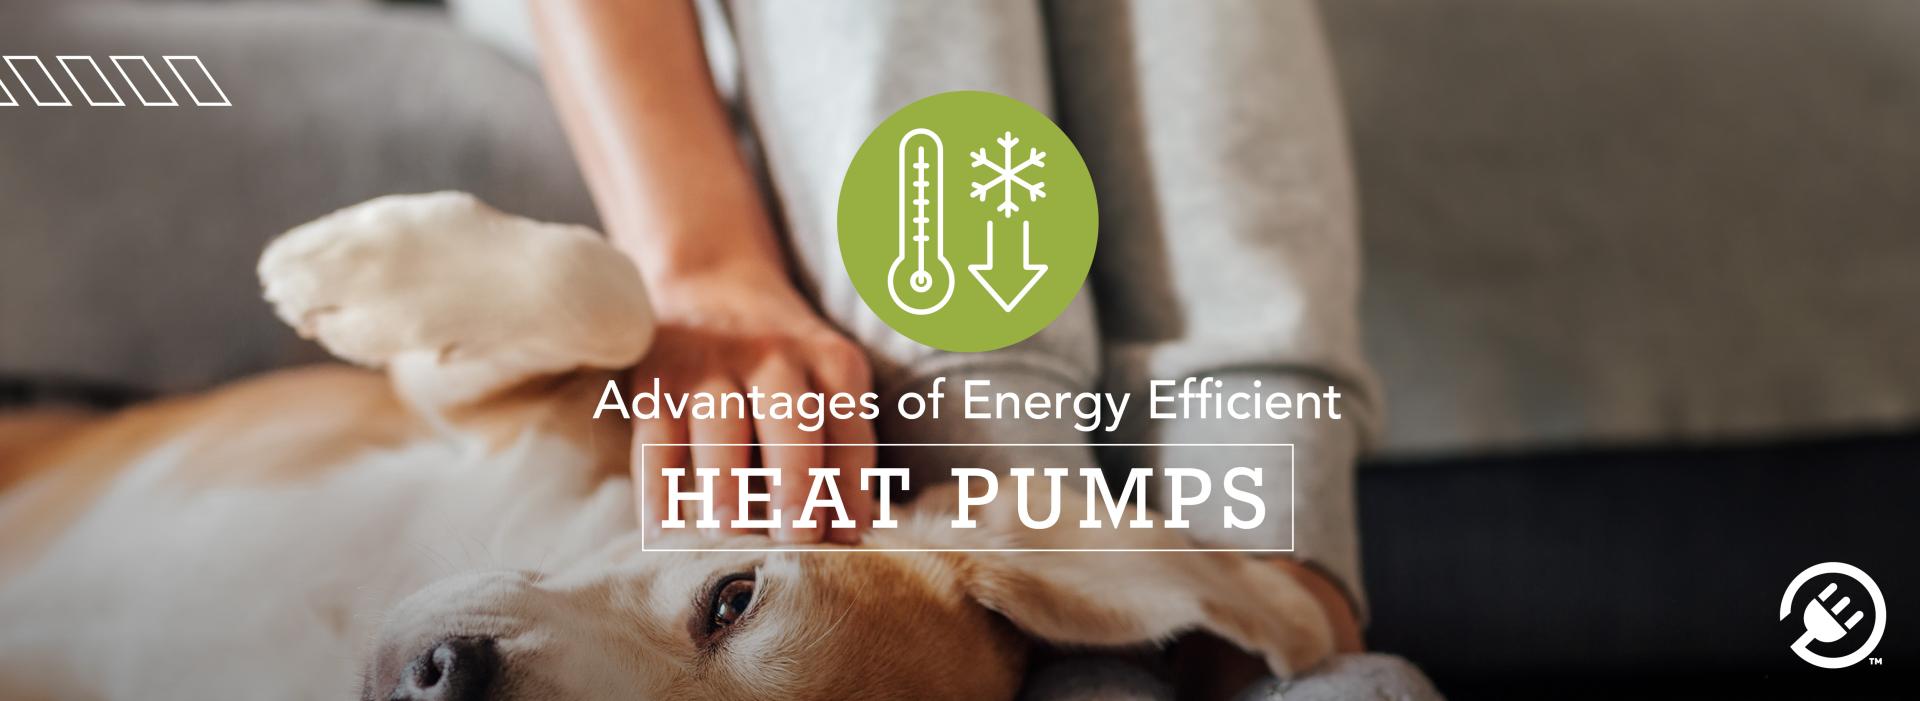 Advantages of heat pumps 